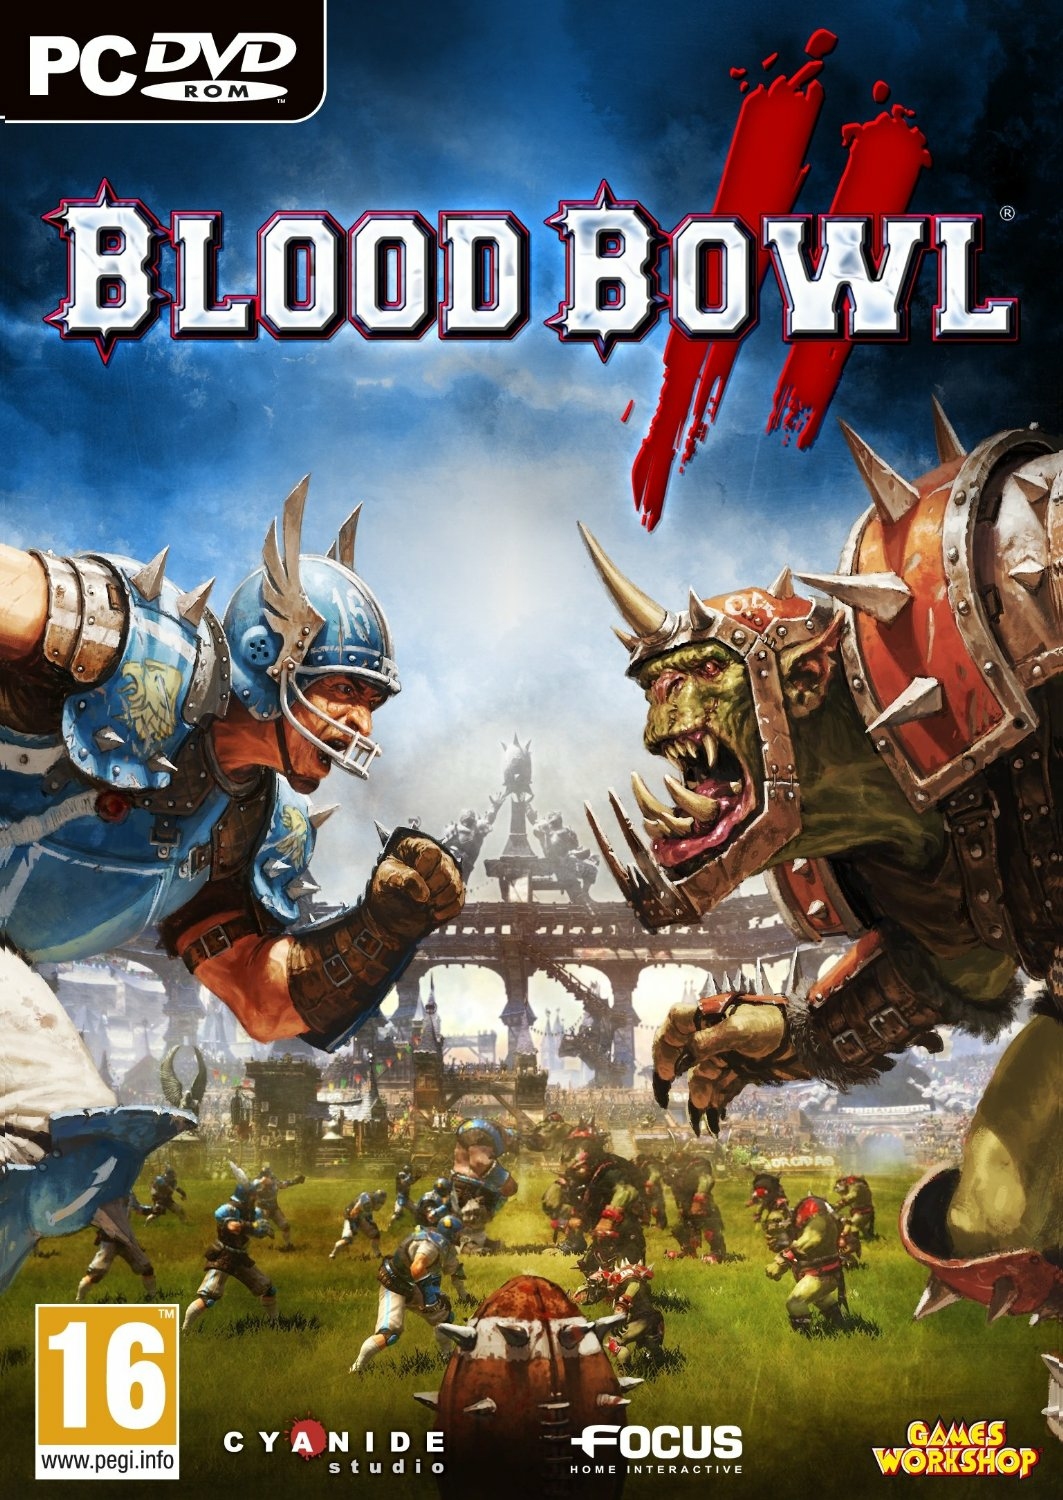 blood bowl pc game